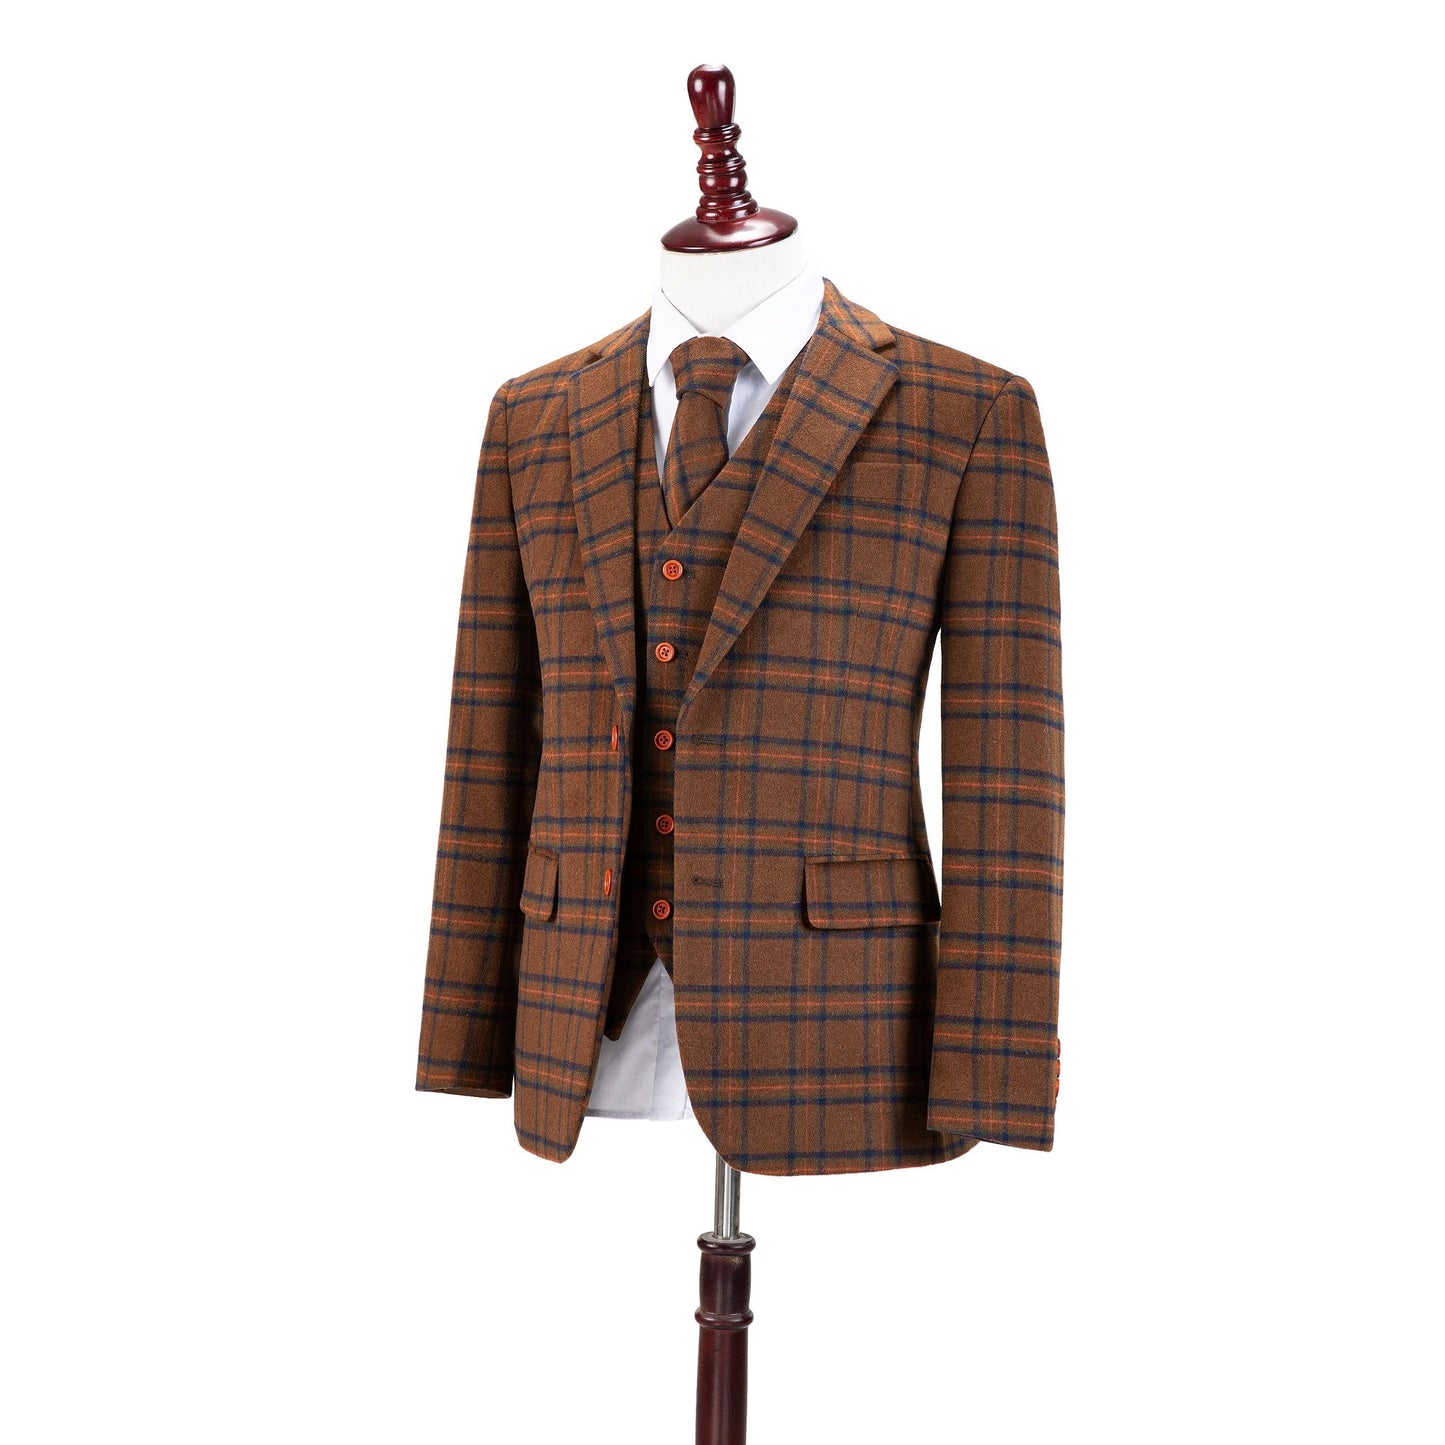 Chestnut Windowpane Plaid Tweed Suit